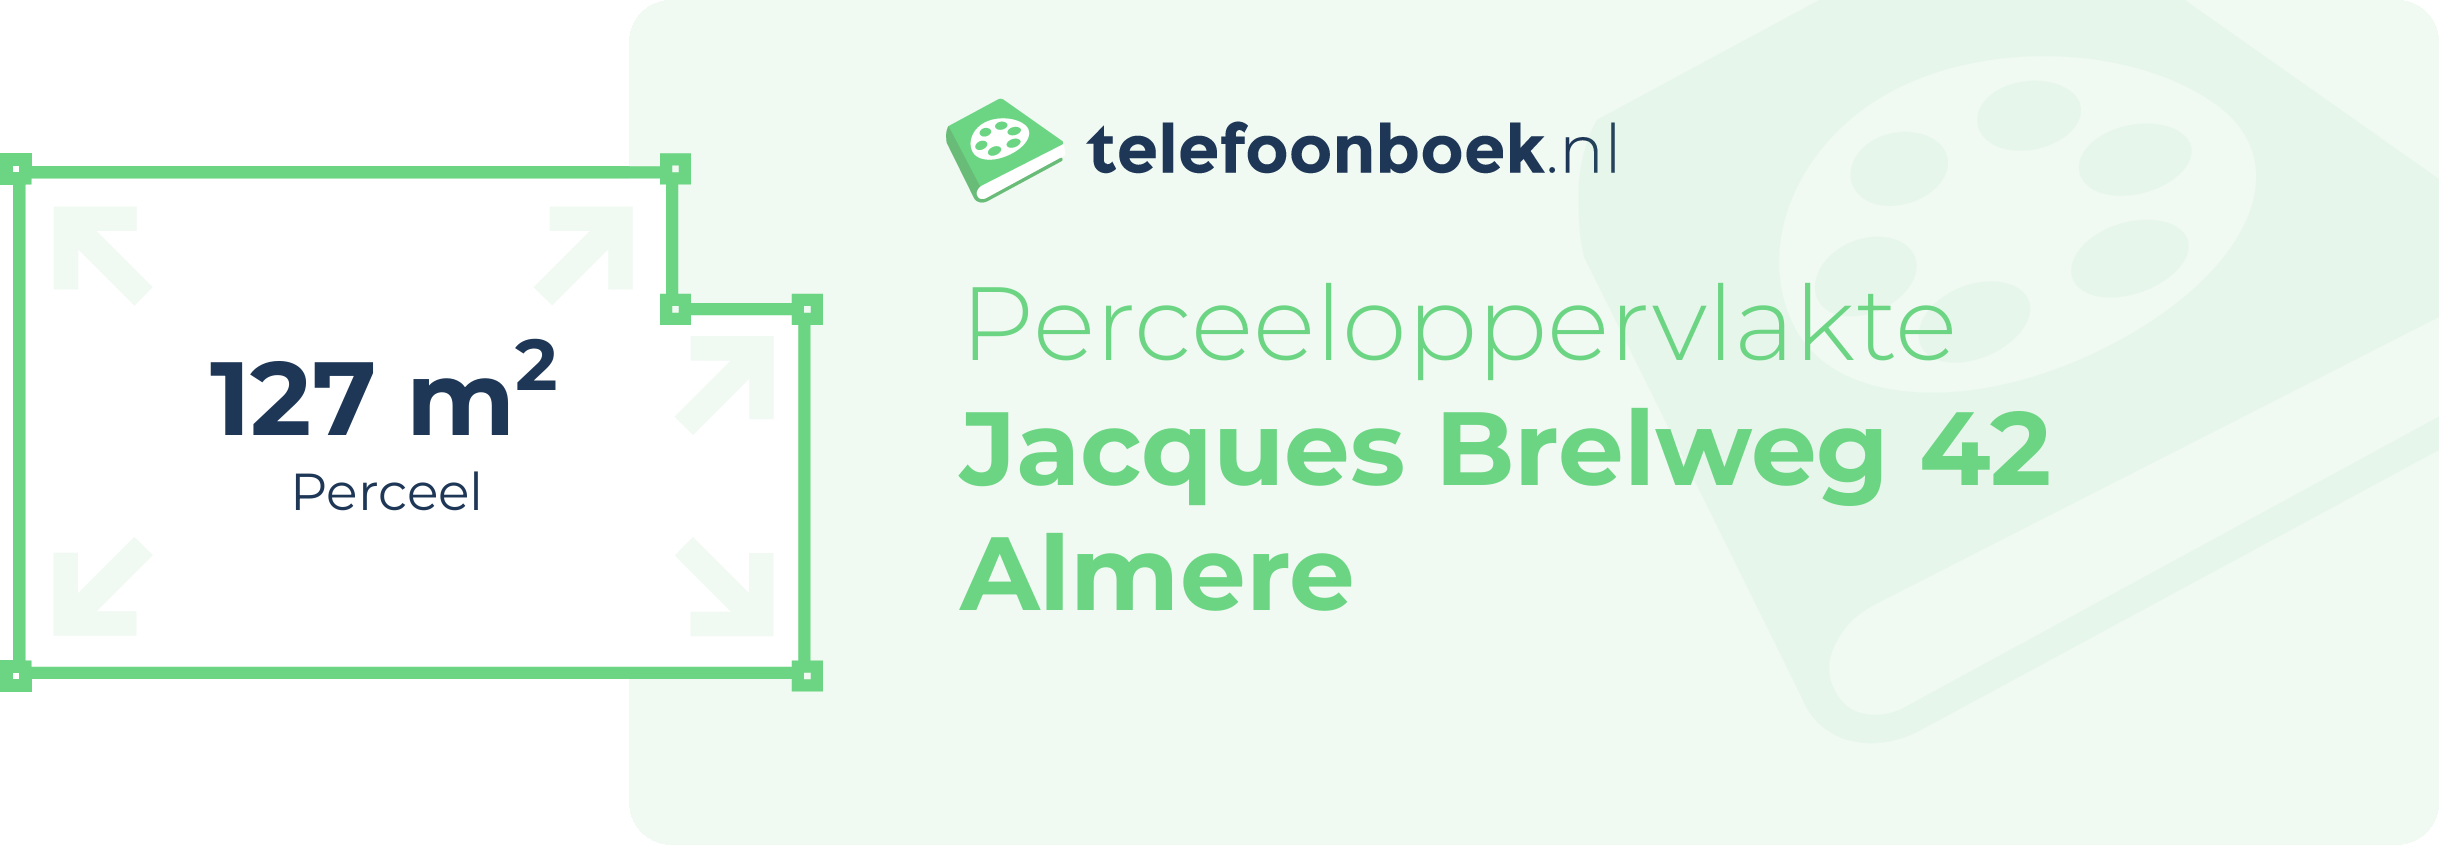 Perceeloppervlakte Jacques Brelweg 42 Almere